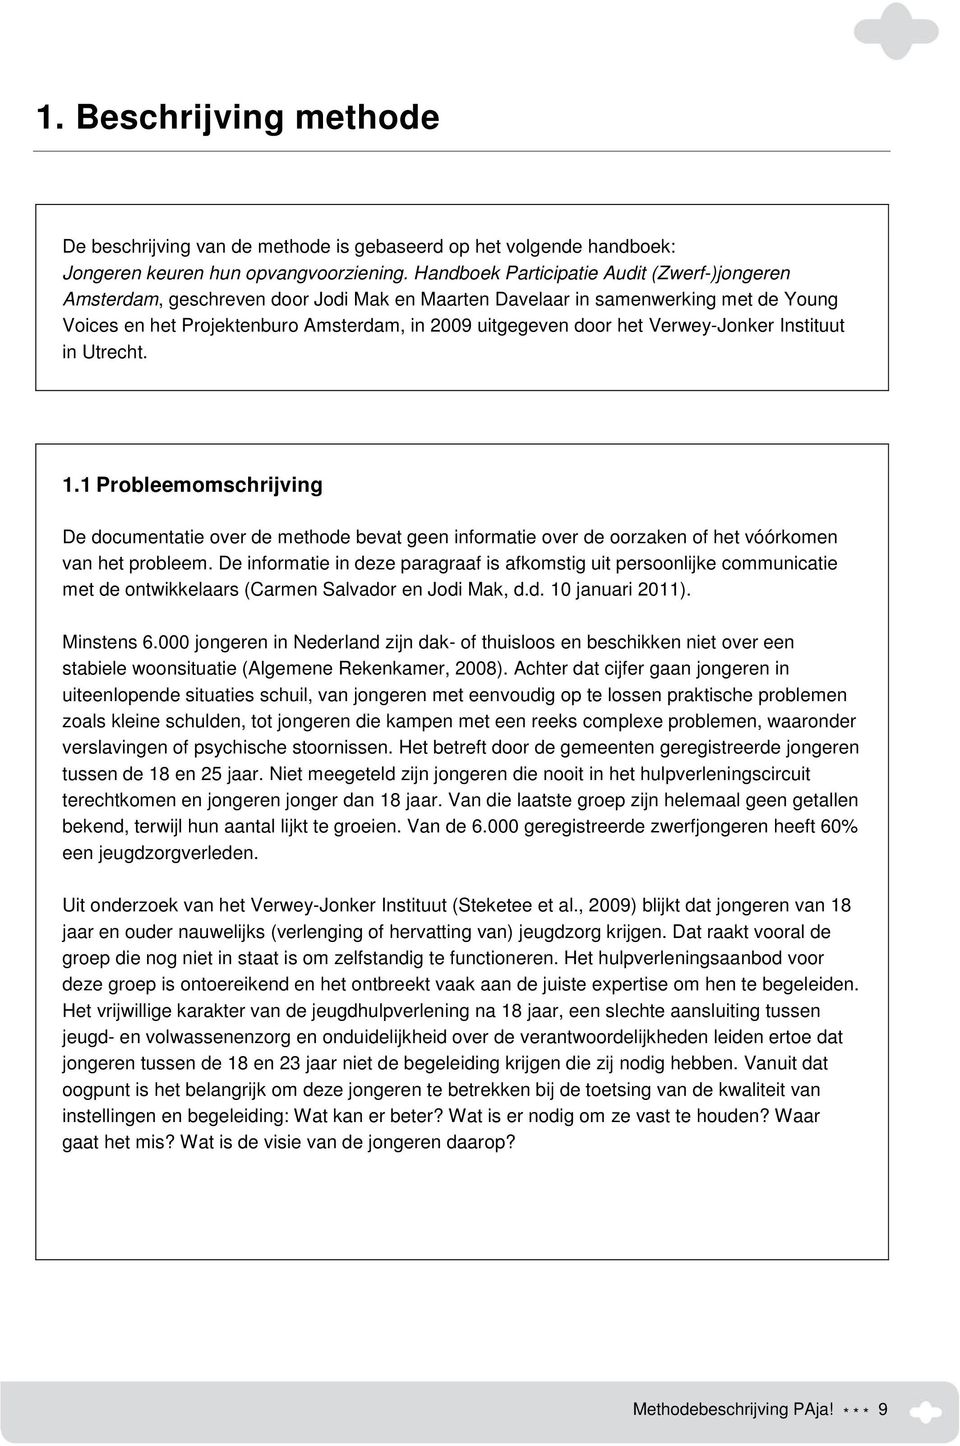 Verwey-Jonker Instituut in Utrecht. 1.1 Probleemomschrijving De documentatie over de methode bevat geen informatie over de oorzaken of het vóórkomen van het probleem.